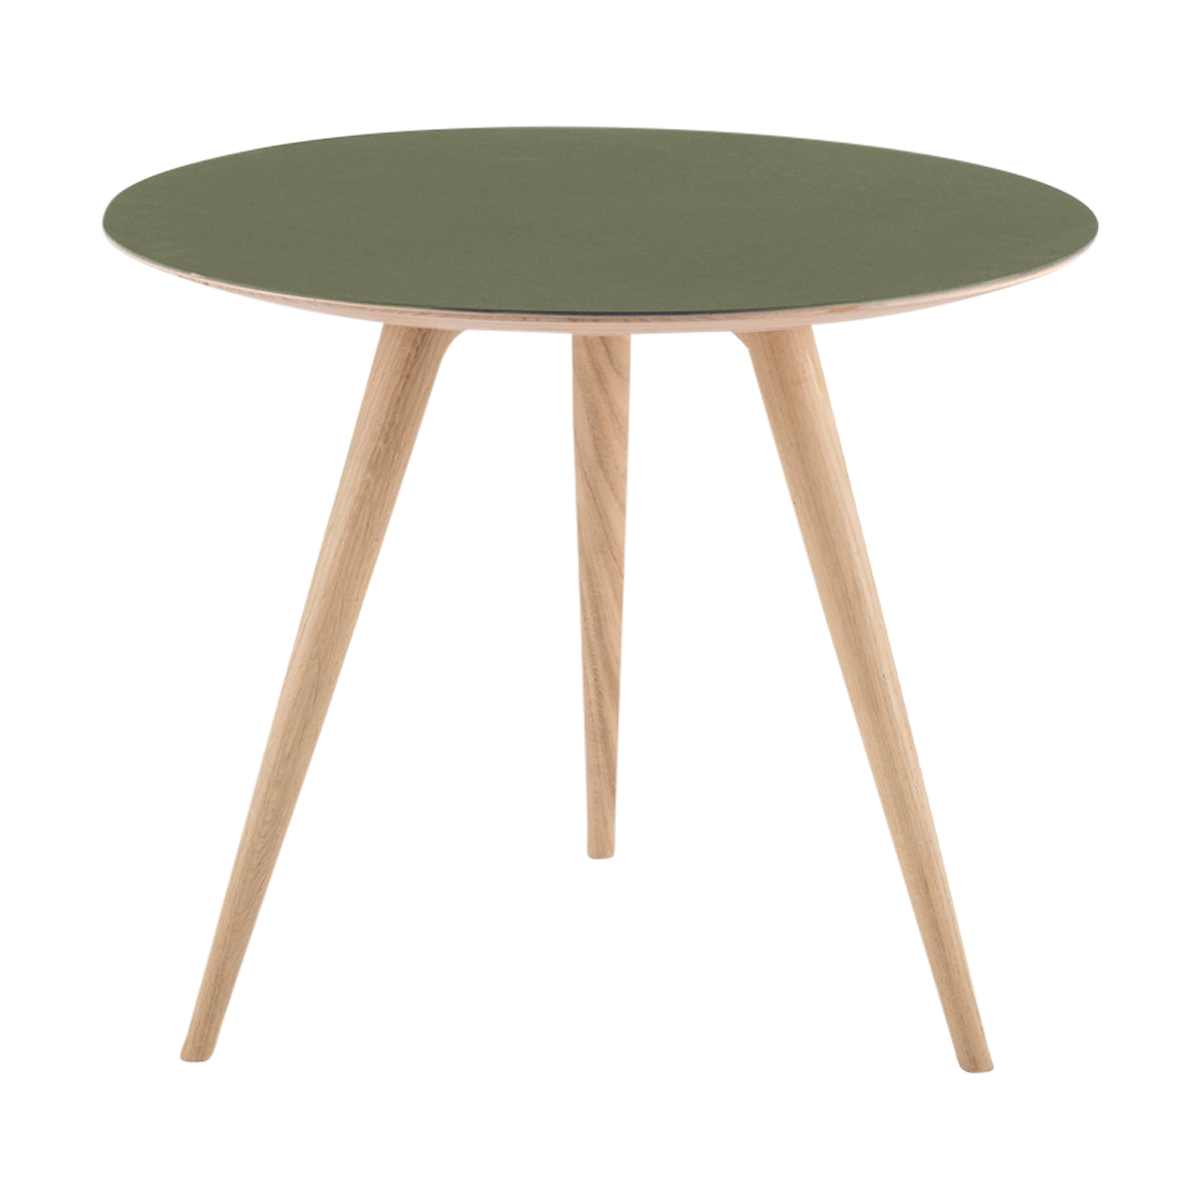 Arp side table houten bijzettafel whitewash - met linoleum tafelblad olive - Ø 55 cm